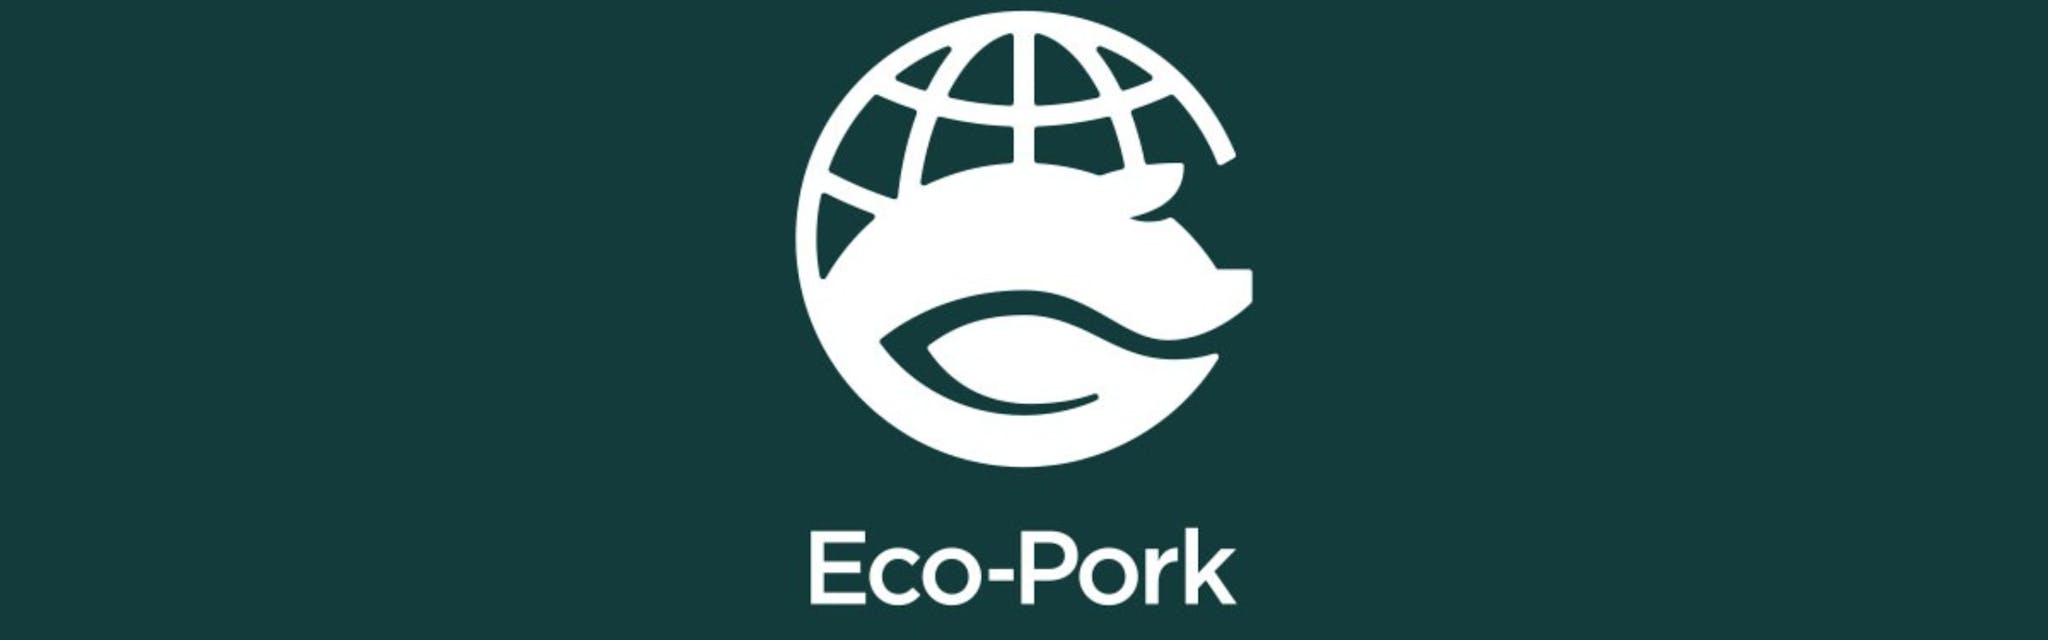 株式会社Eco-Pork - メイン画像